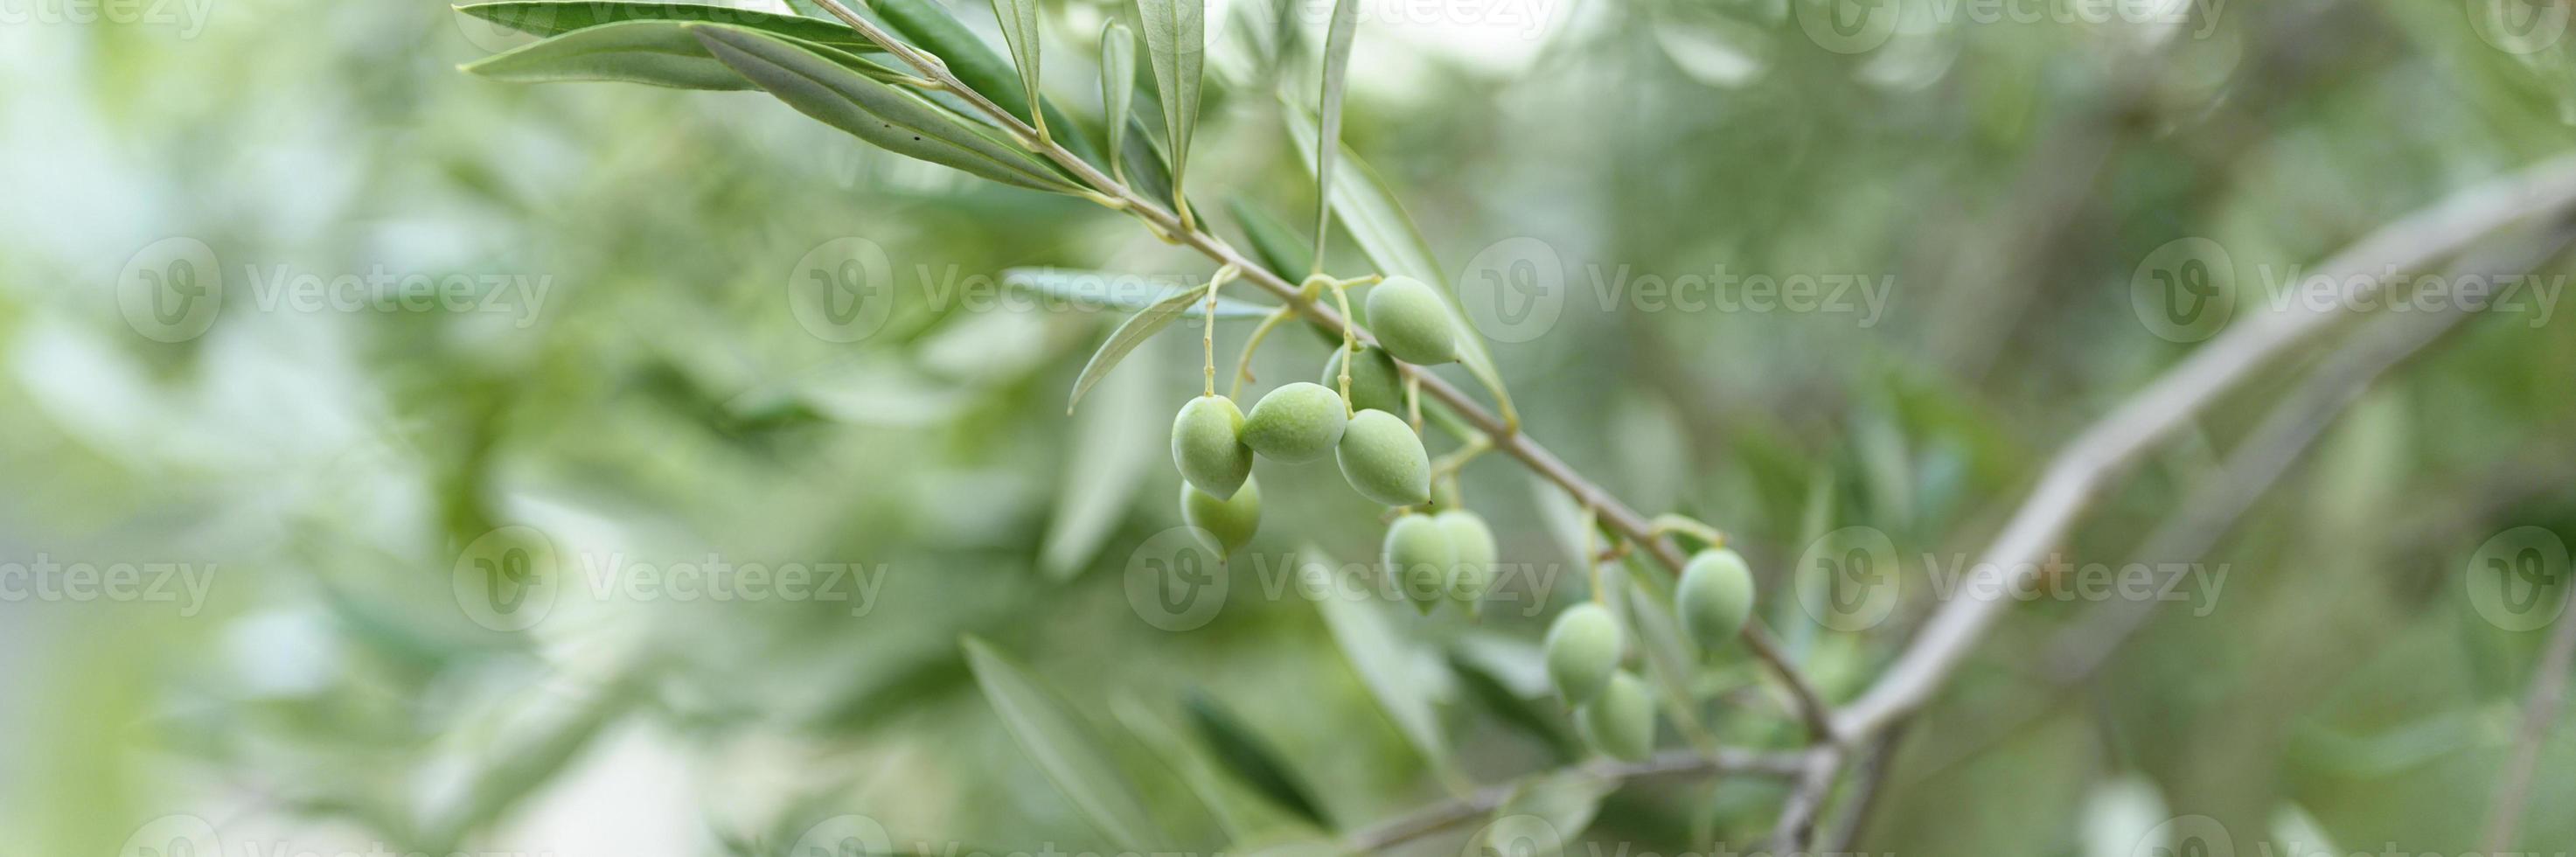 groene olijven groeien op een olijfboomtak in de tuin foto